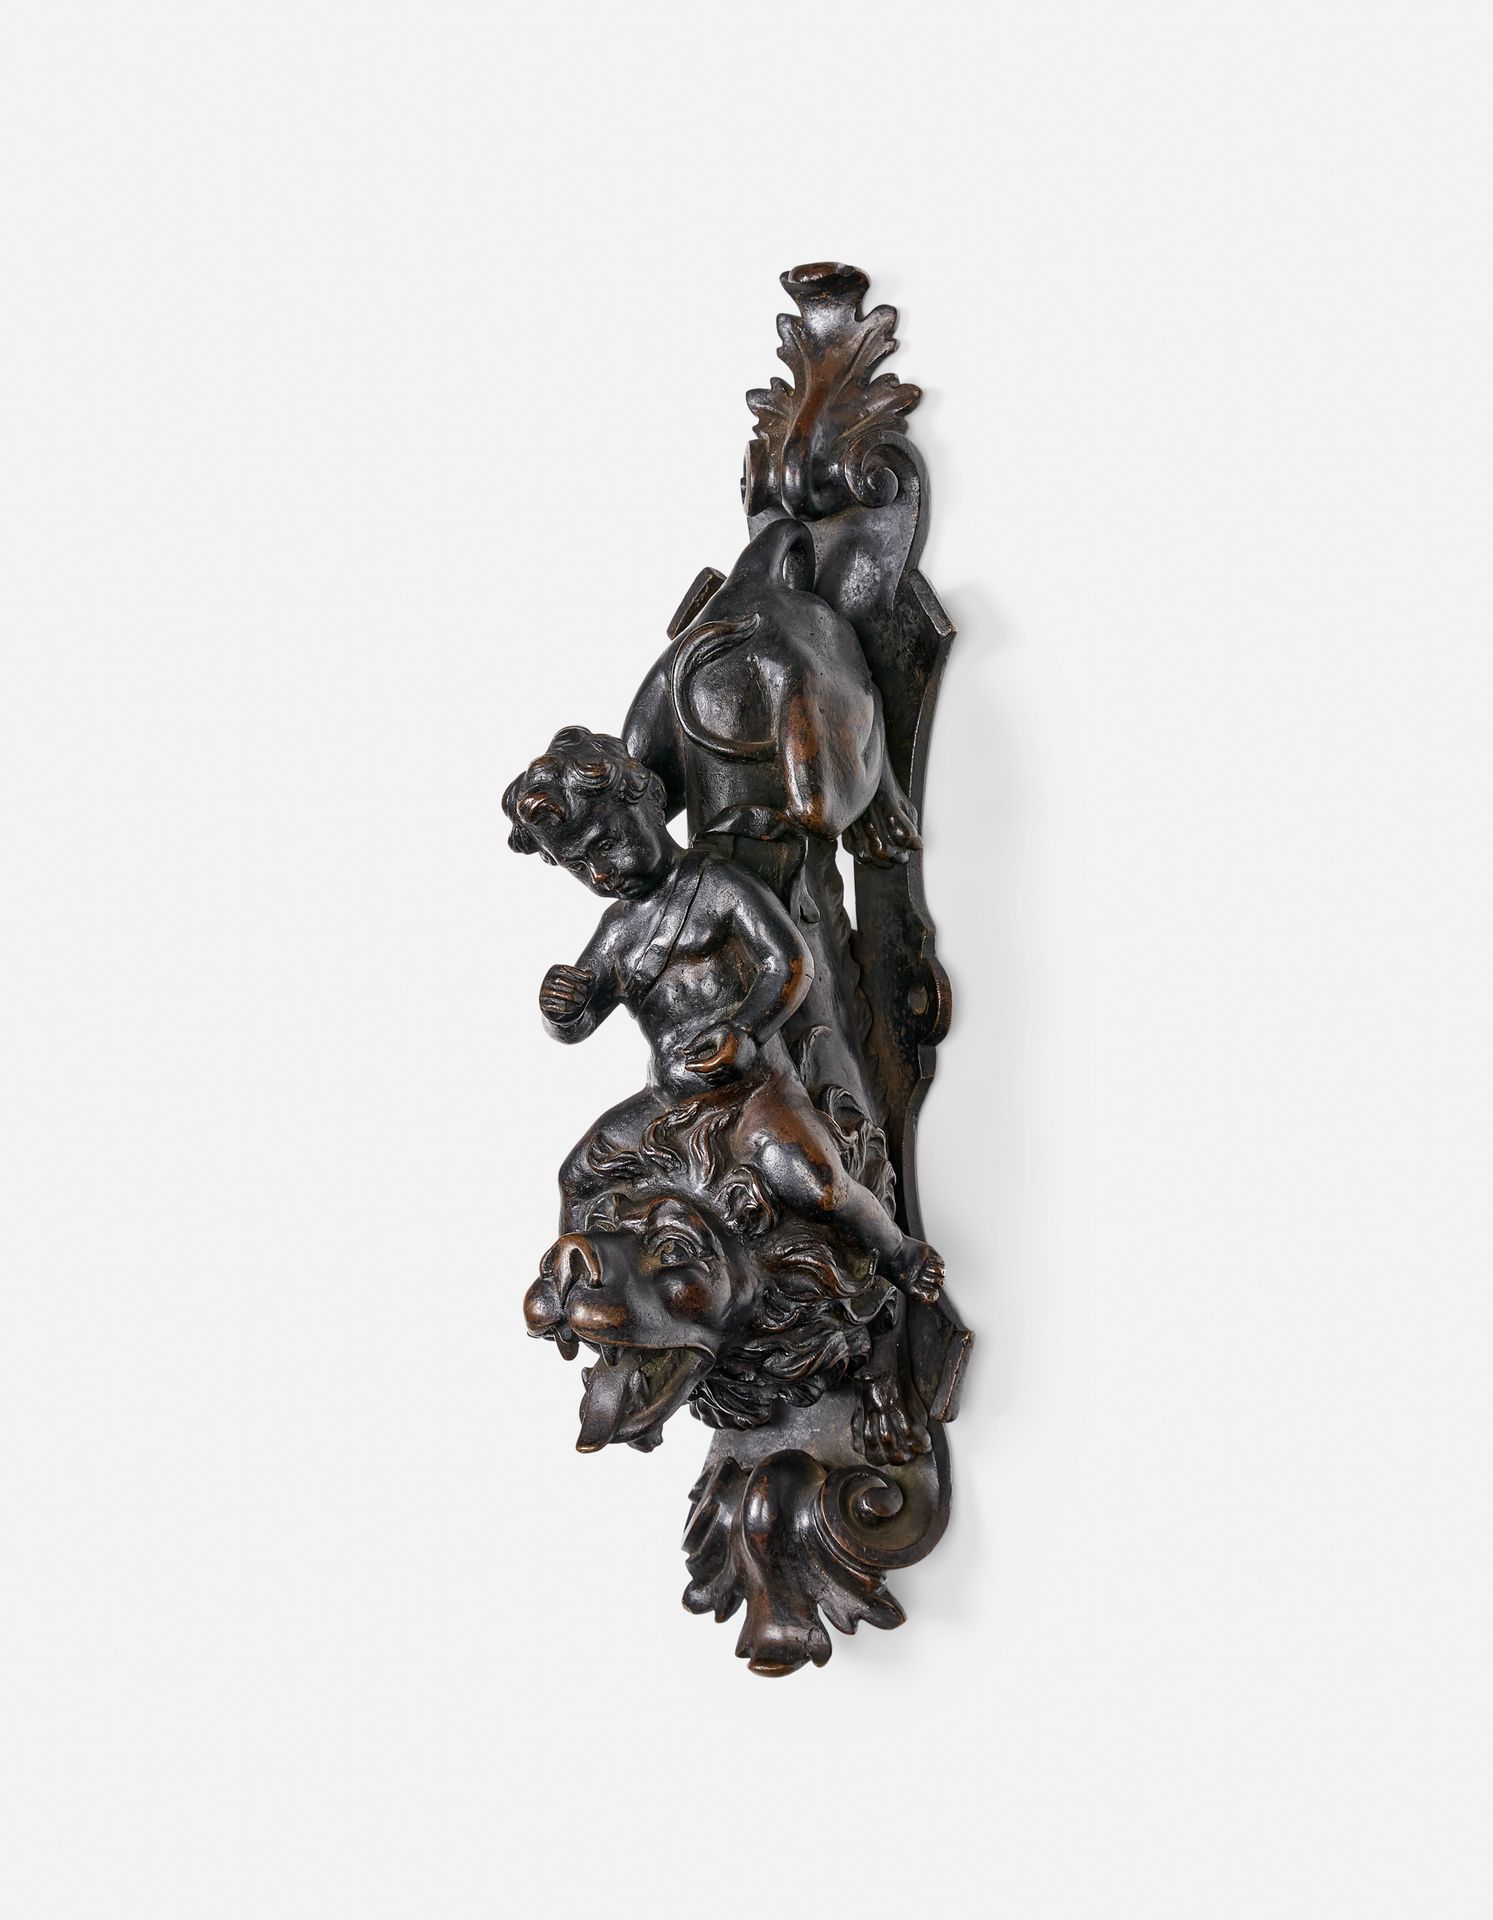 Null BATTENTE IN BRONZO

Paesi Bassi, inizio XVIII secolo 

Con patina di bronzo&hellip;